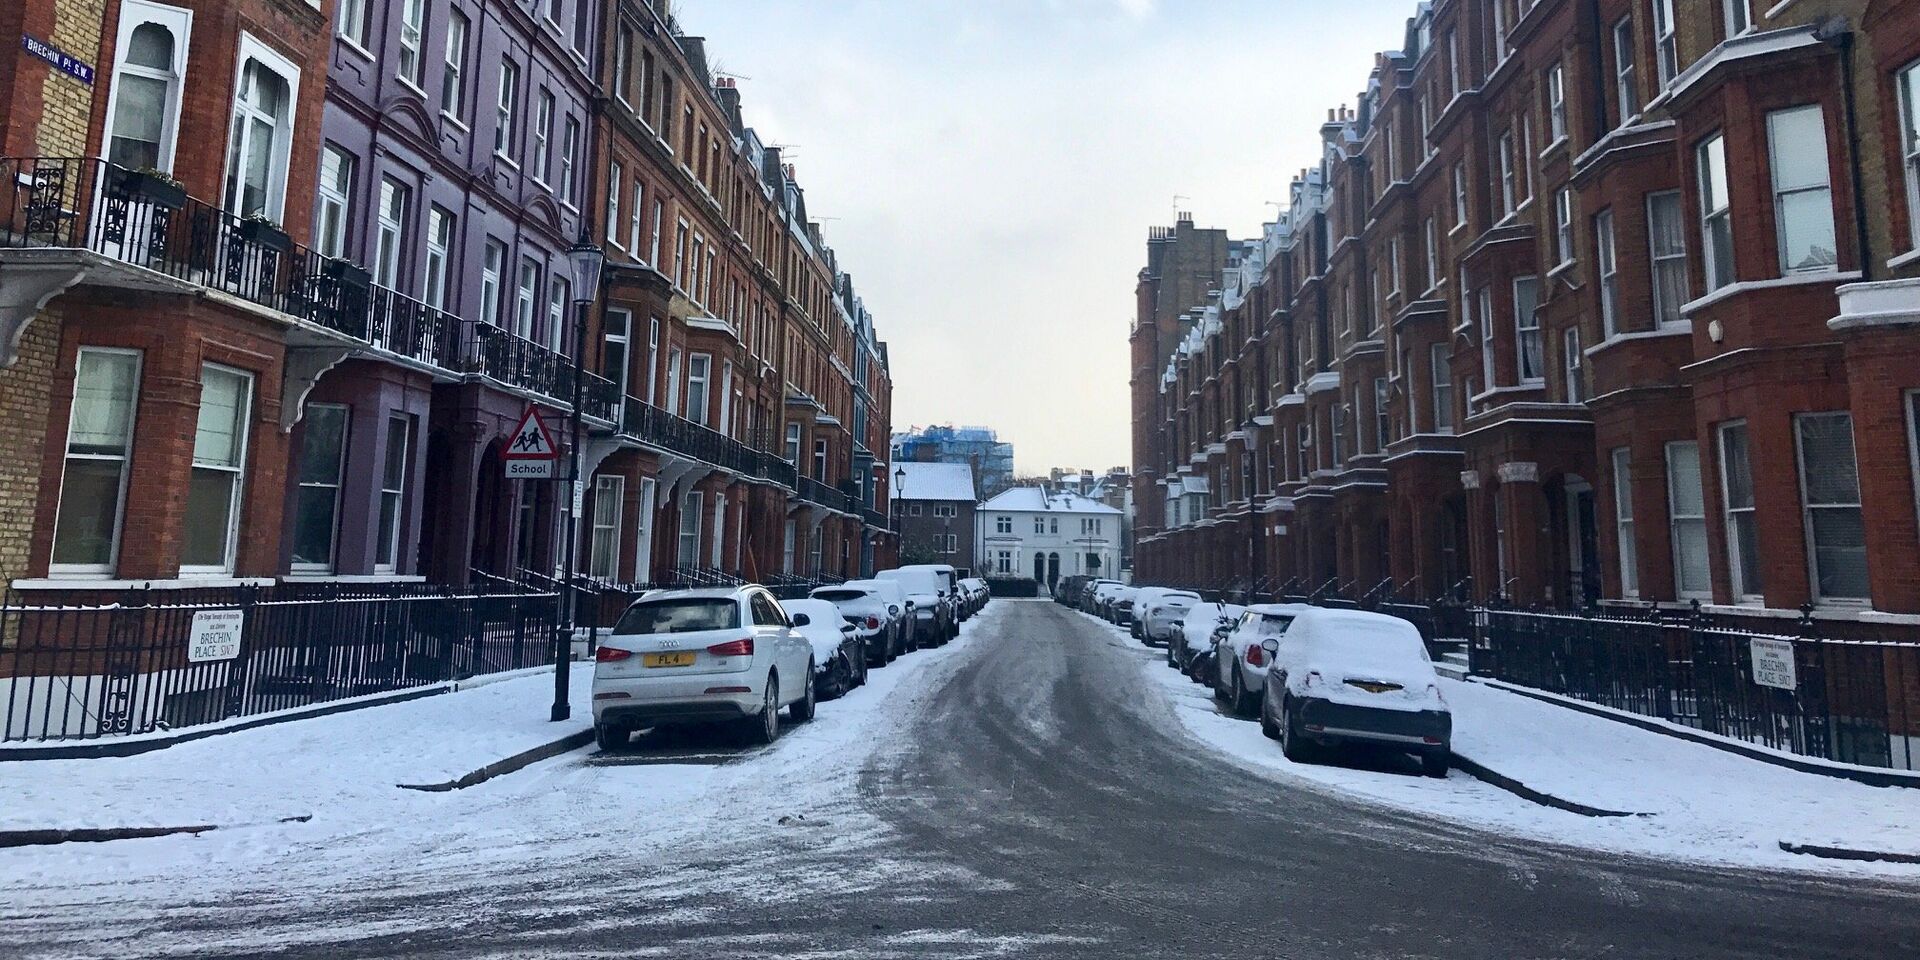 Снег, выпавший на улицах Лондона. 28 февраля 2018 - ИноСМИ, 1920, 22.09.2021